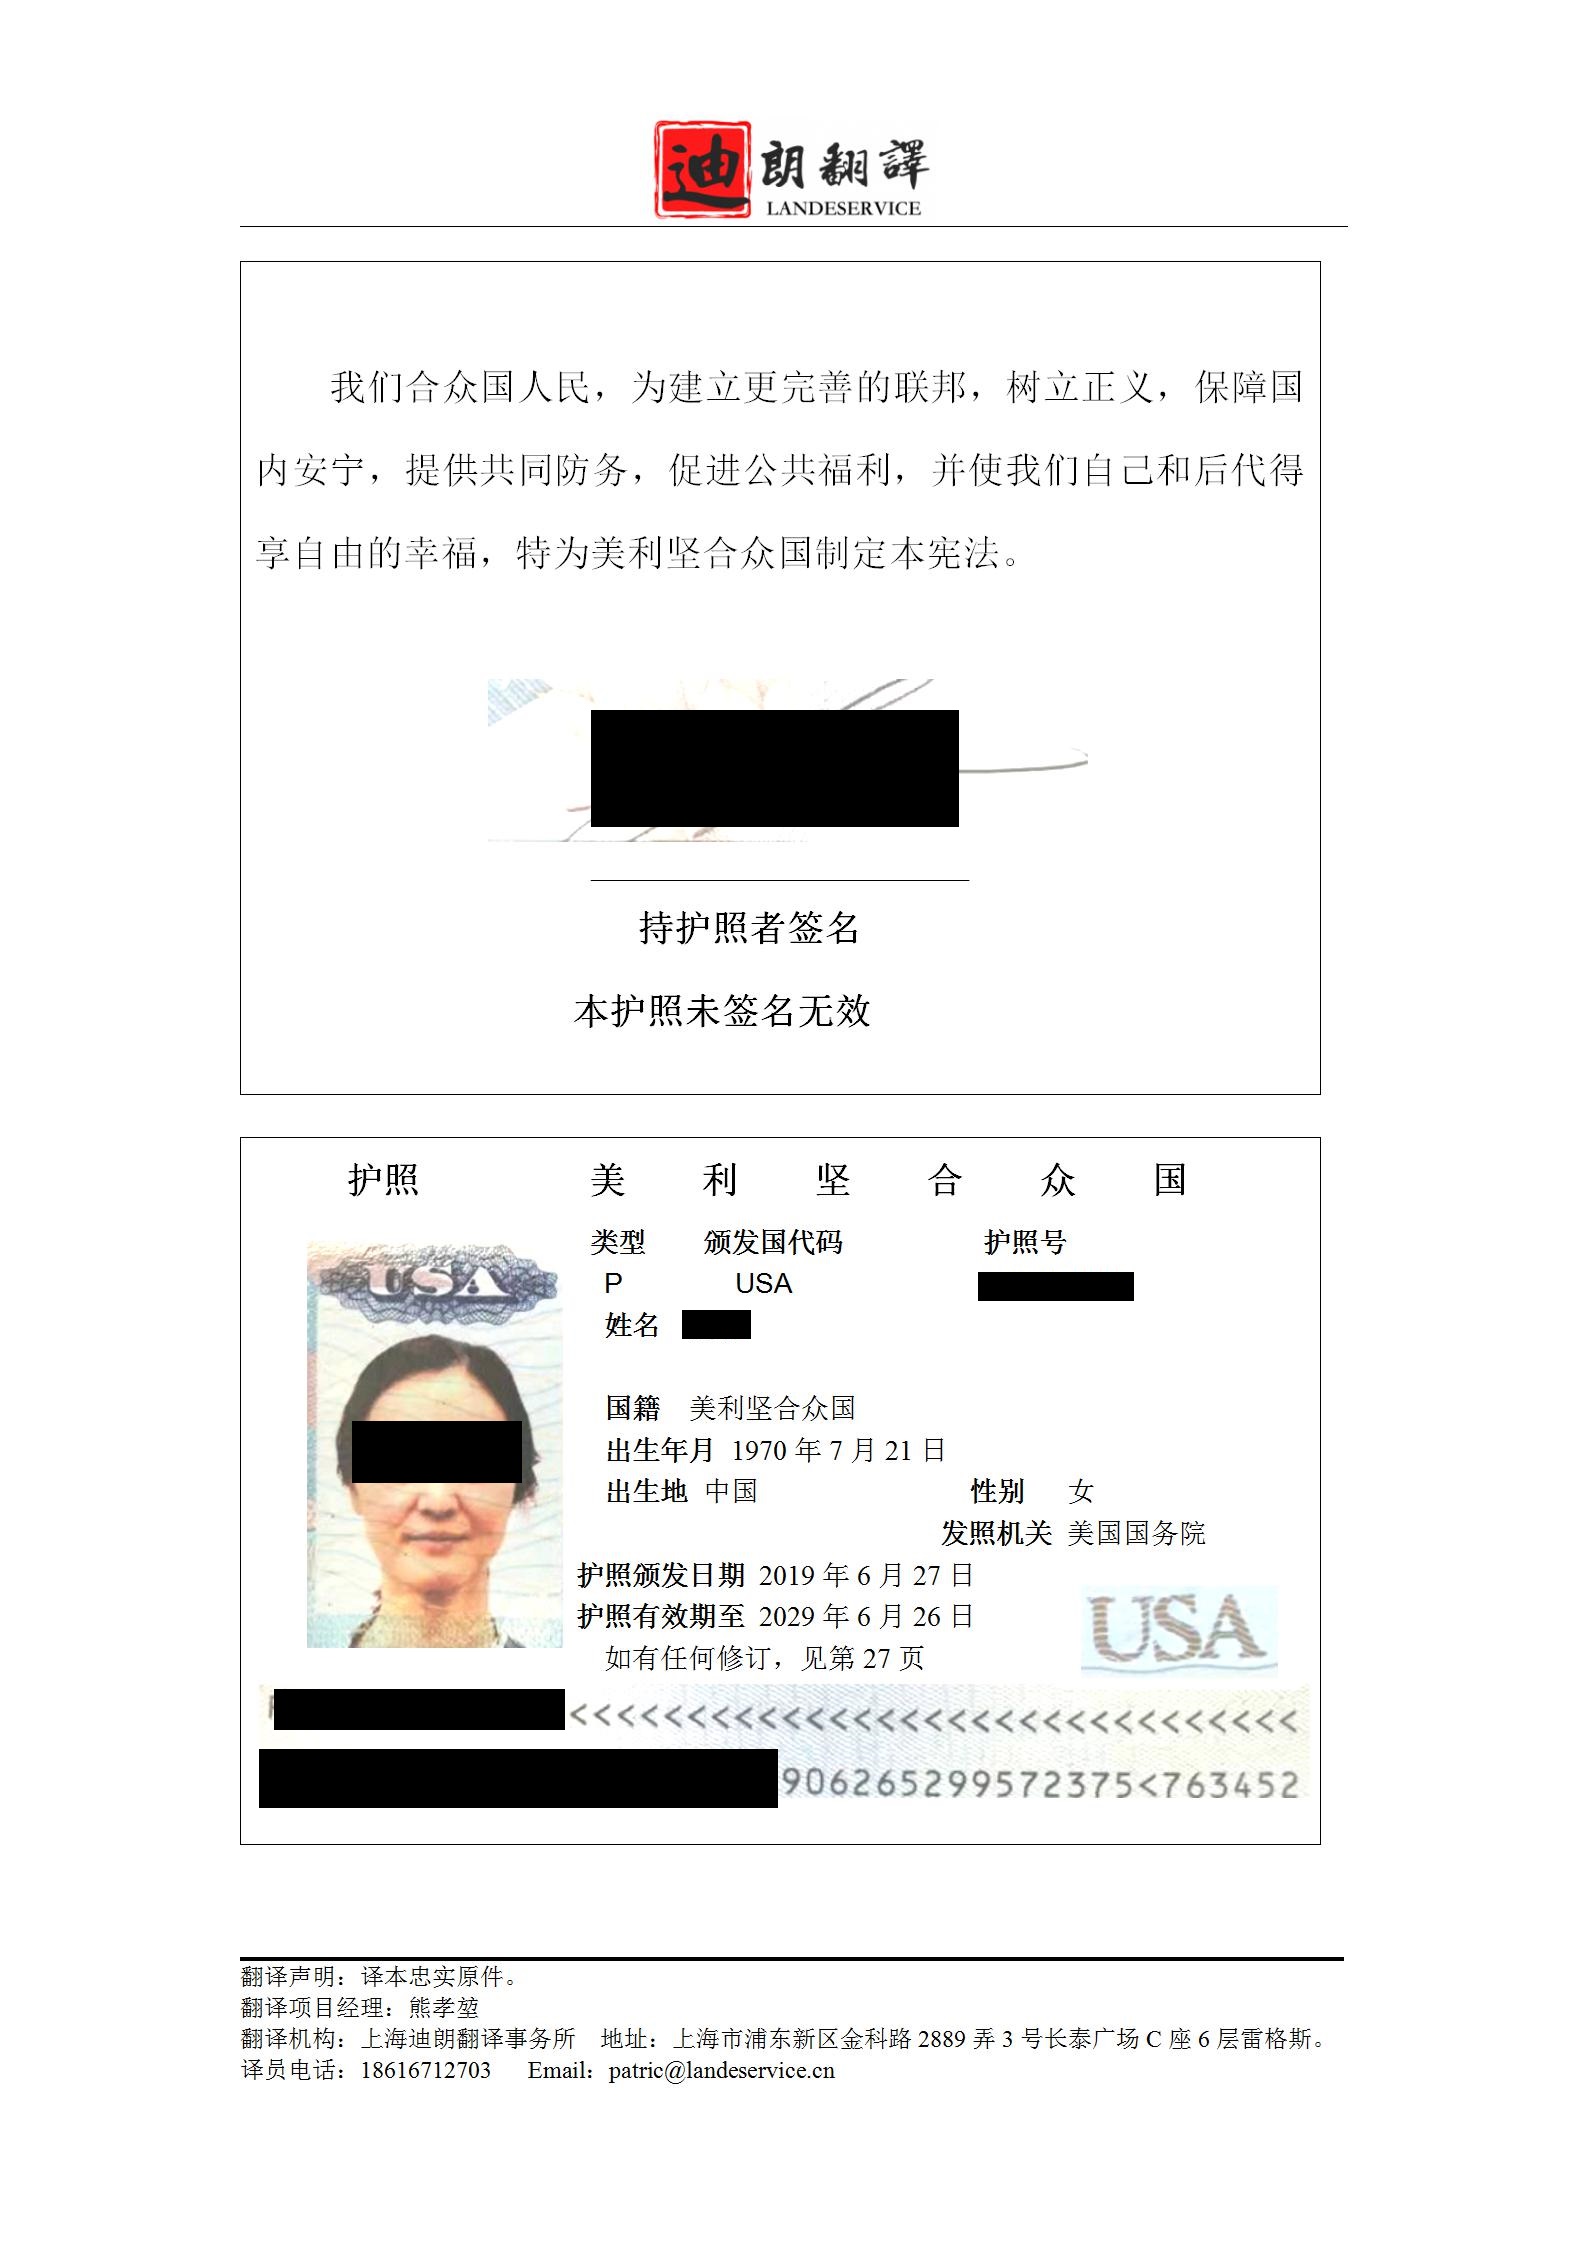 美国护照翻译件jren 01 - 美国护照翻译认证盖章